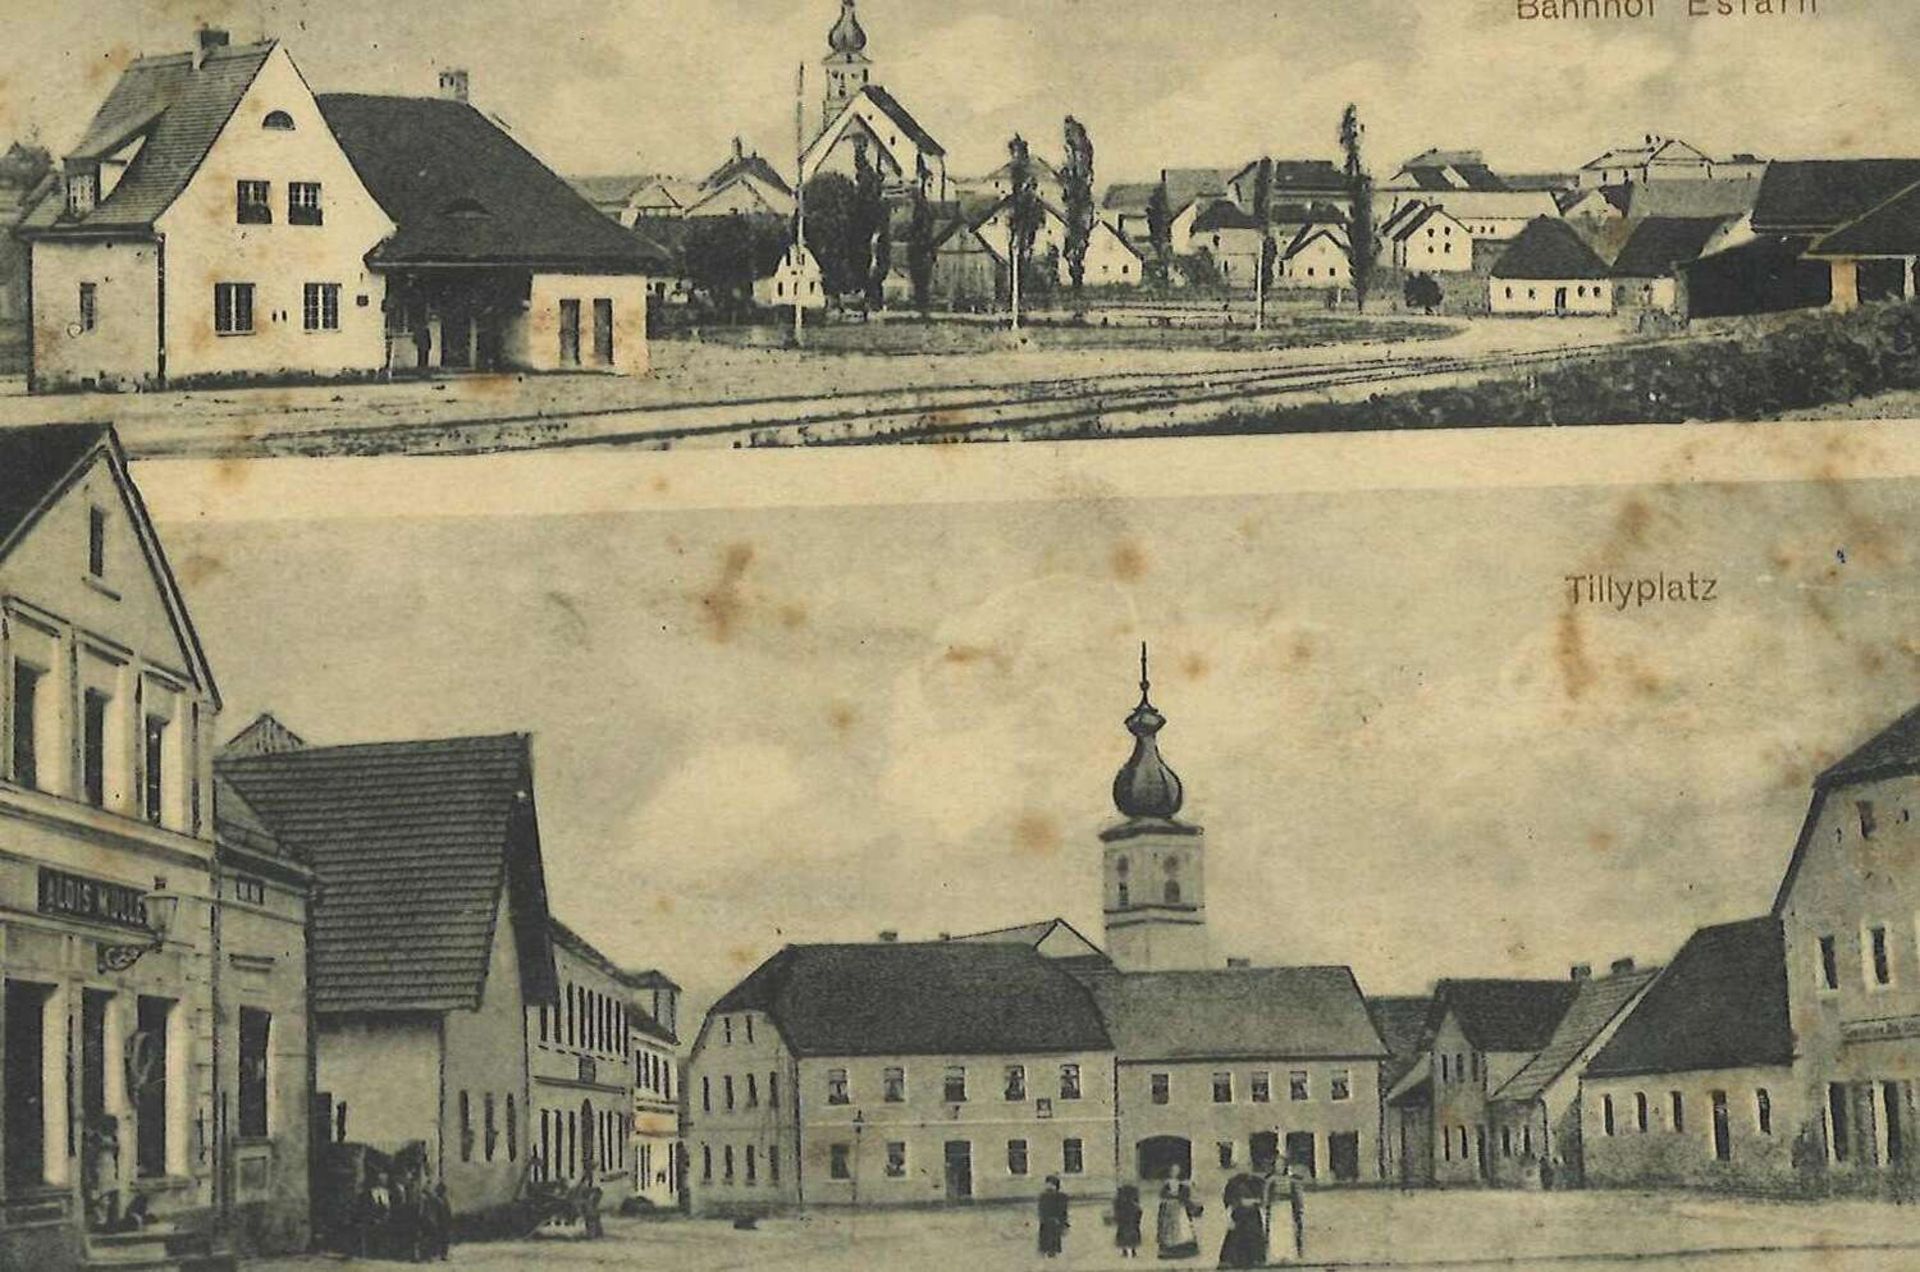 Postkarte Eslarn, Ansicht Bahnhof und Tillyplatz, gelaufen Postcard Eslarn, view of train station